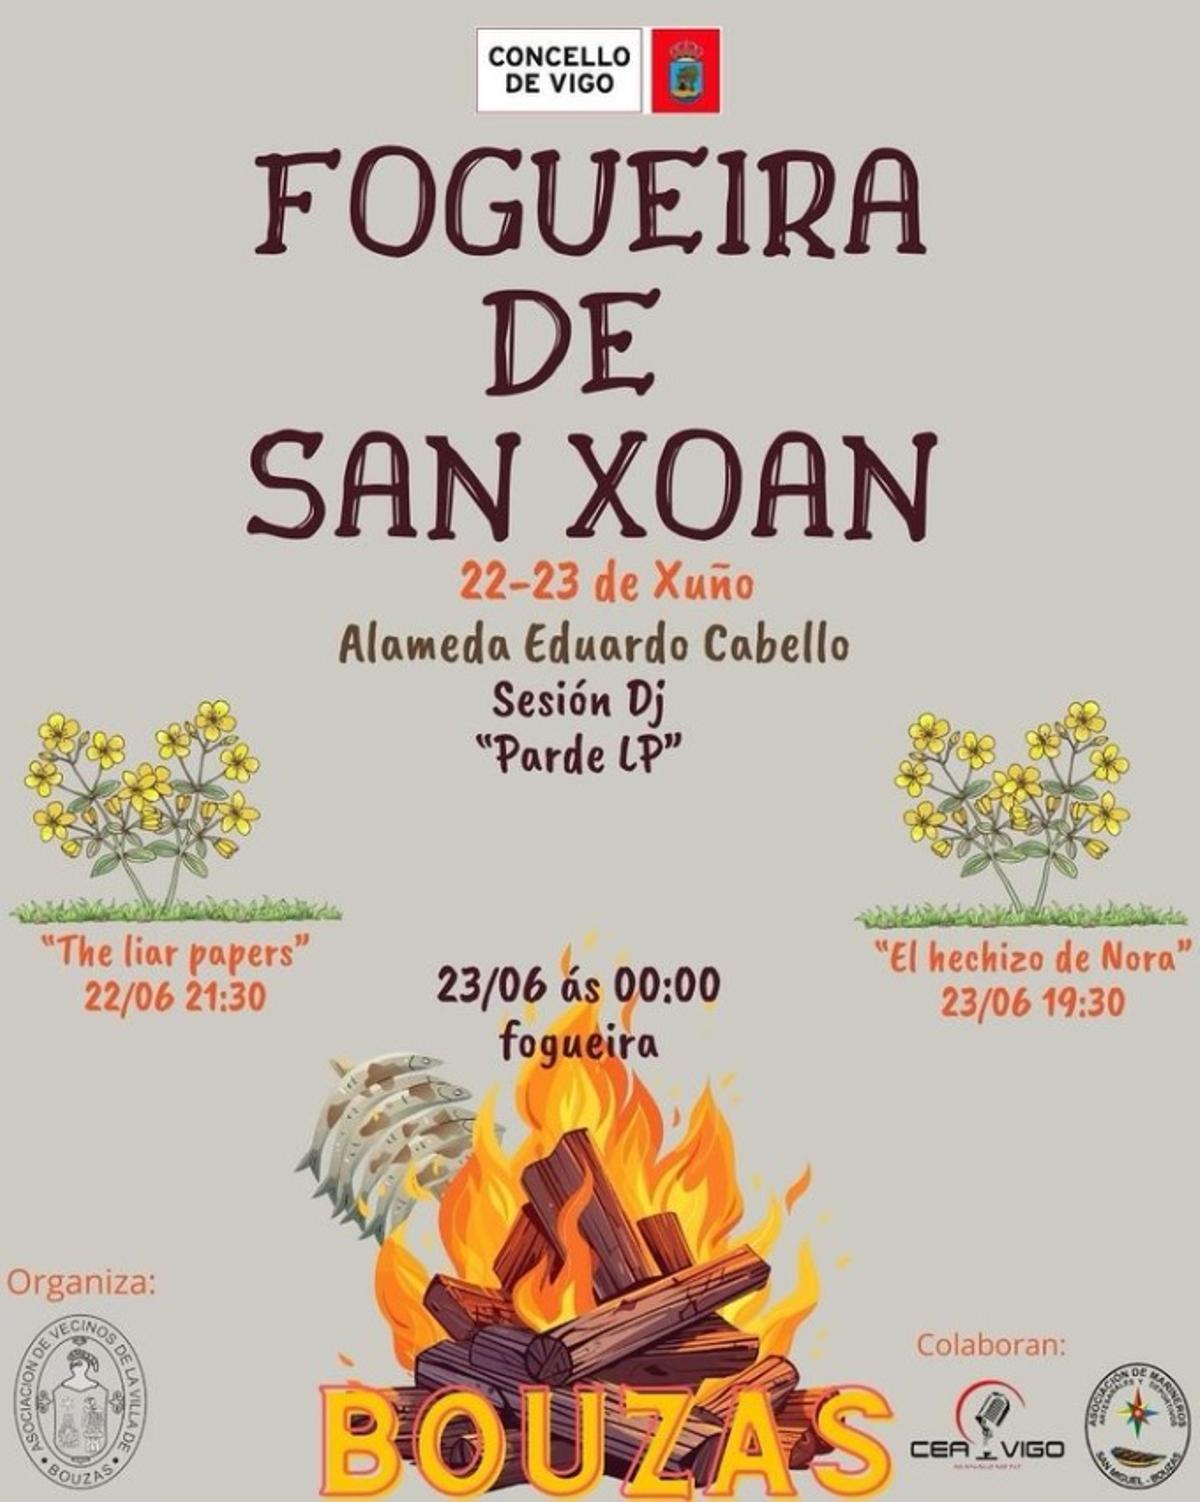 Programas de la fiesta de San Juan en Vigo: Bouzas